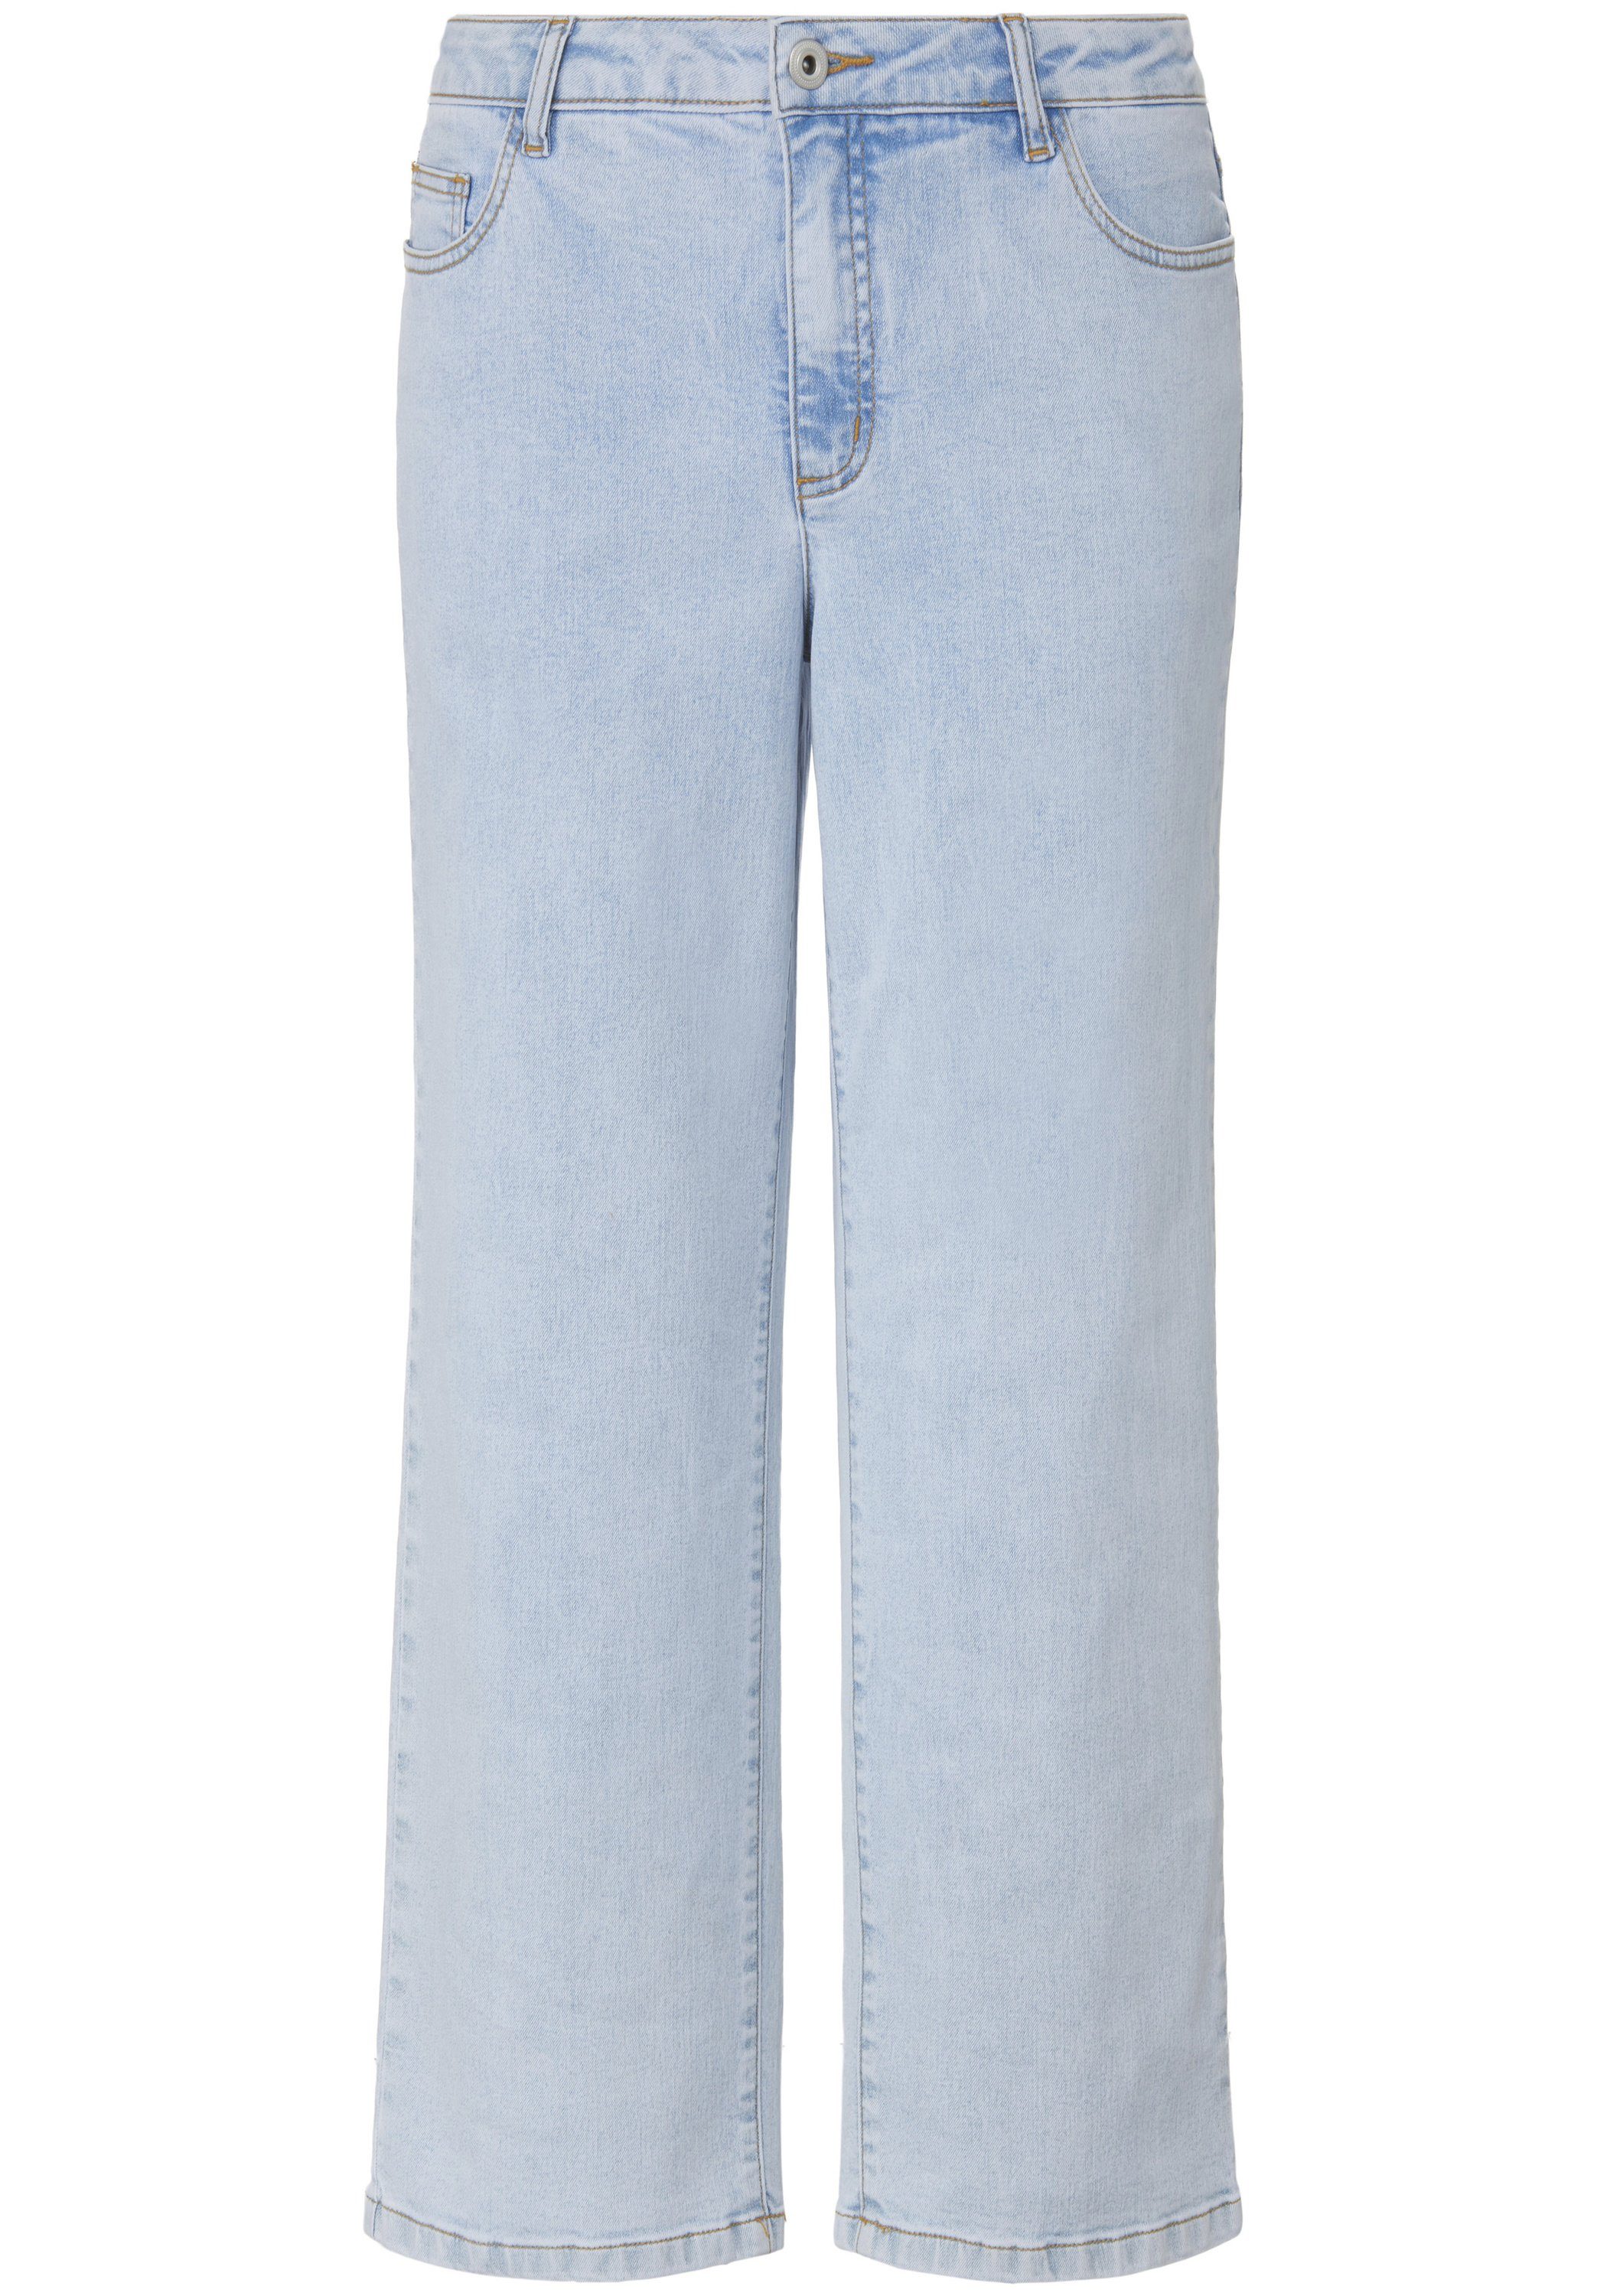 Lay Emilia Slim-fit-Jeans cotton